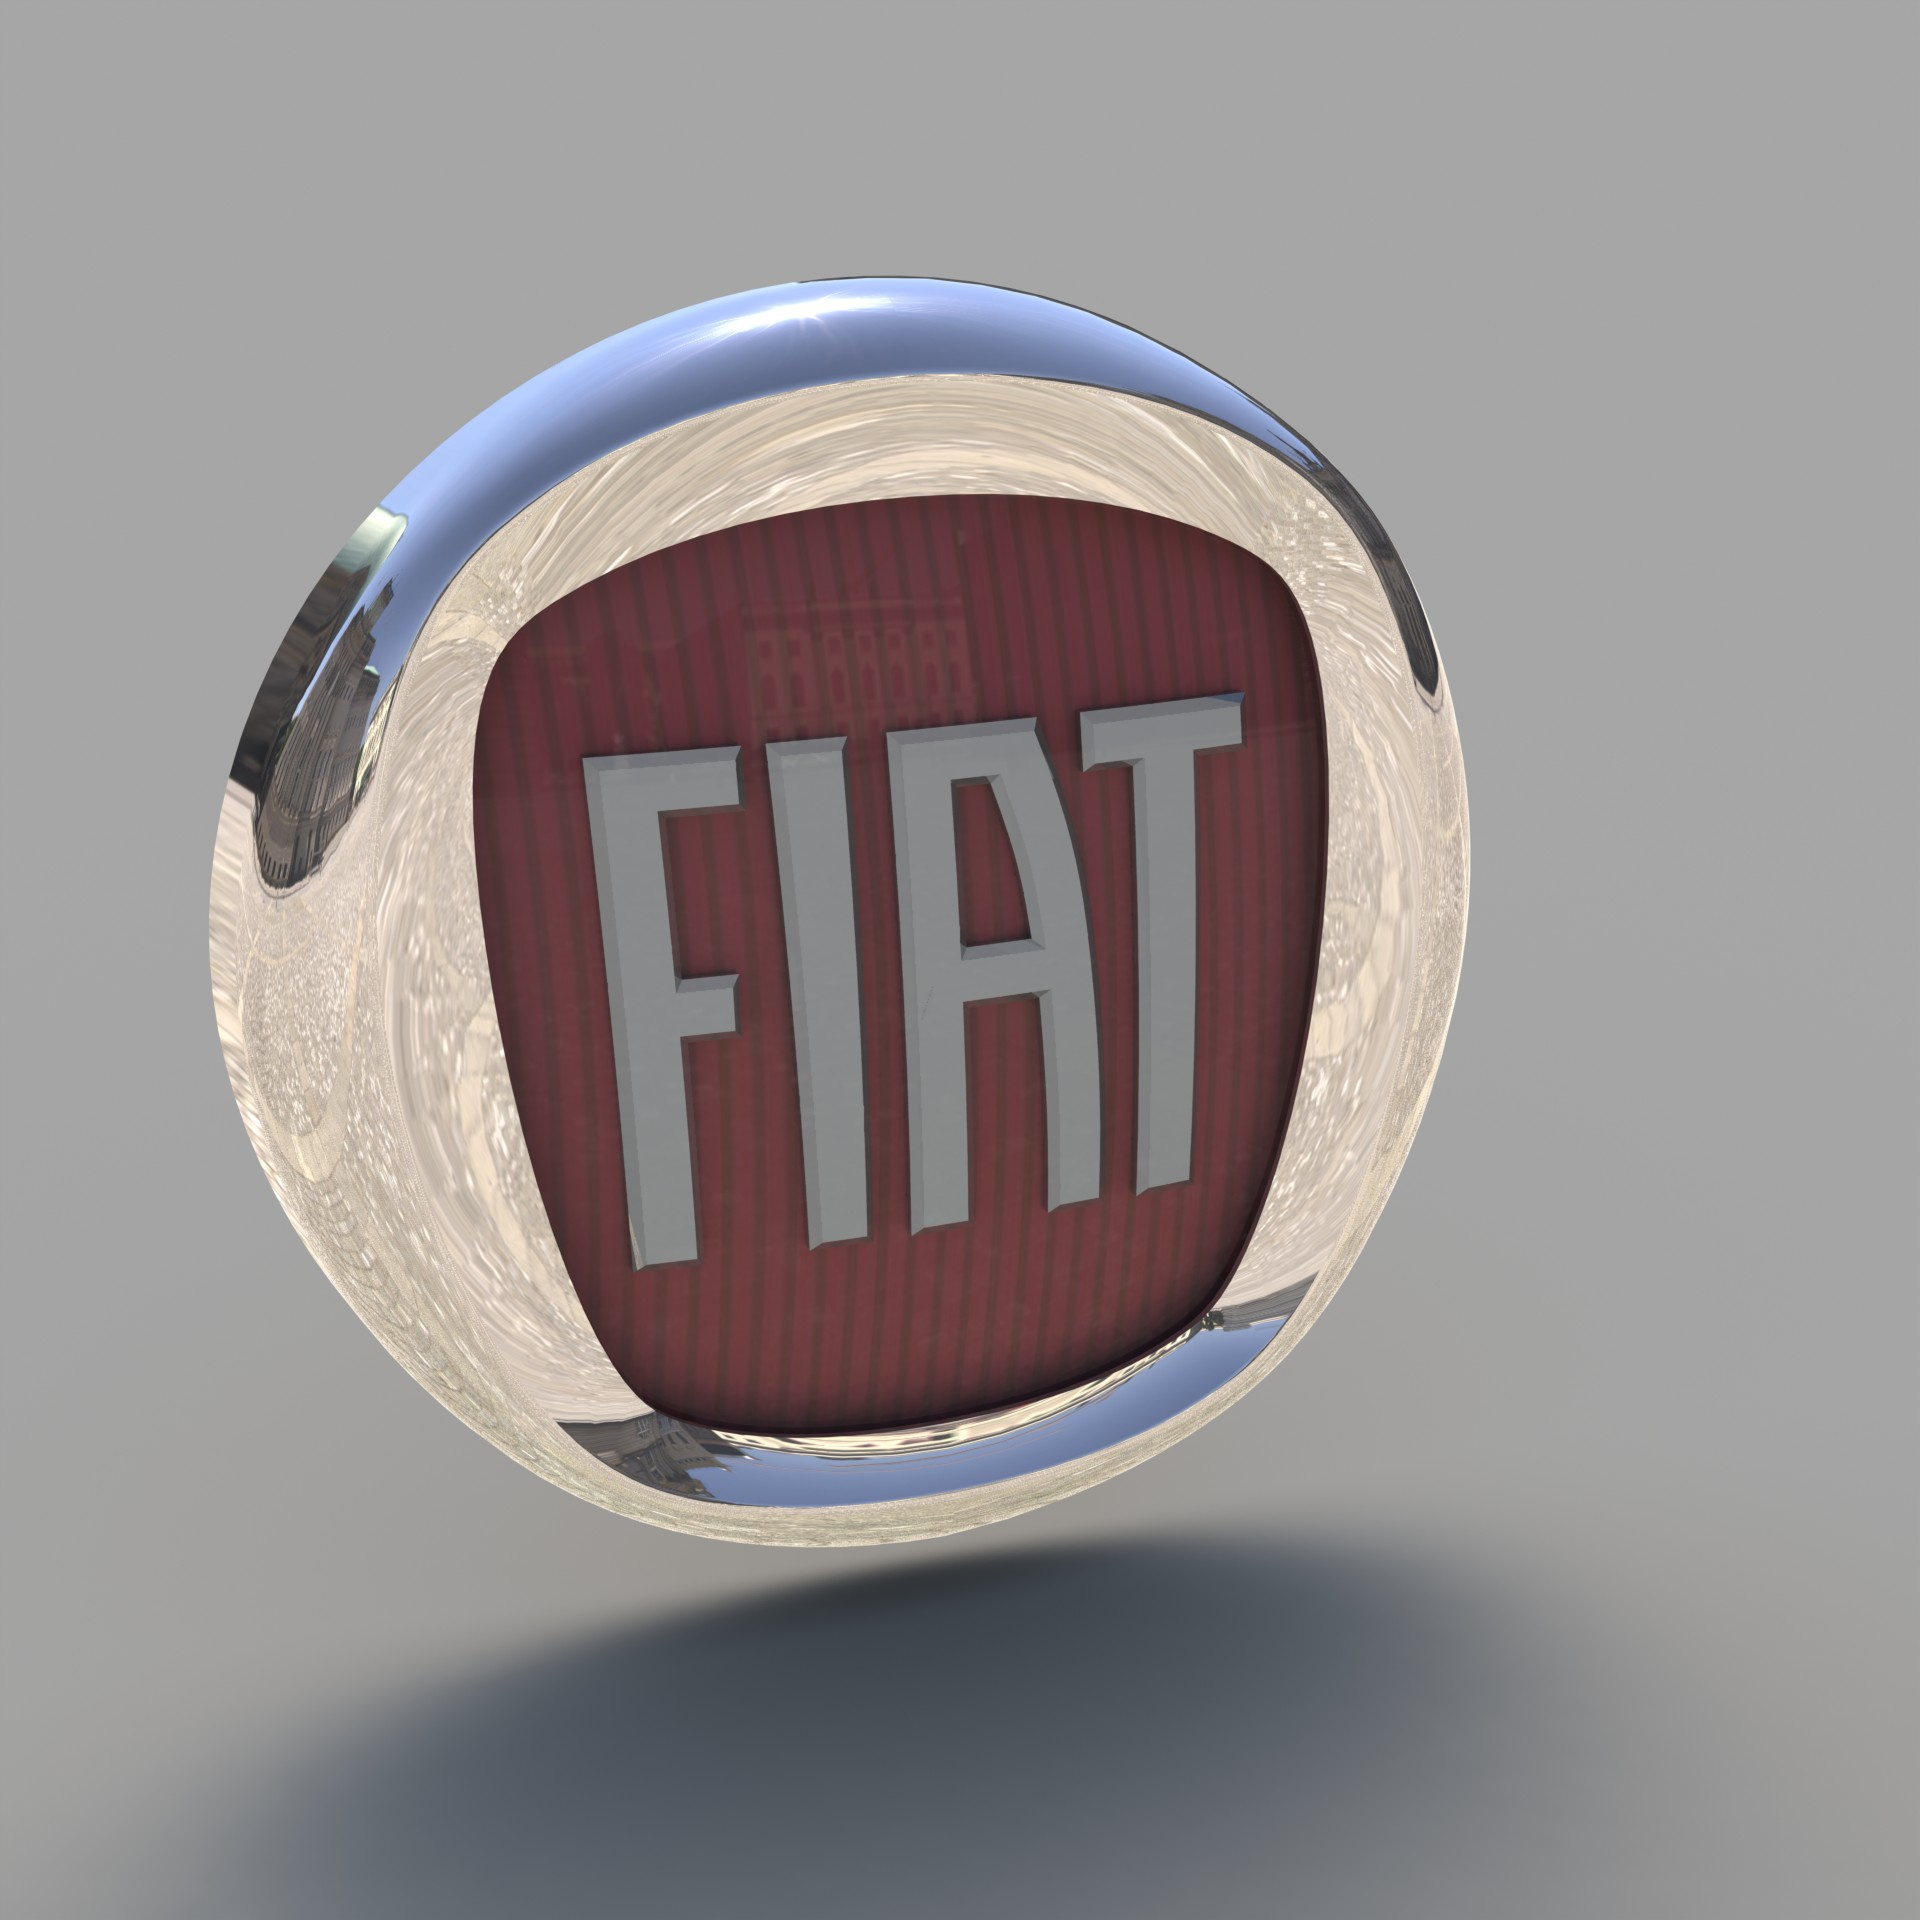 https://0201.nccdn.net/4_2/000/000/00d/f43/Fiat-logo-with-tartan-1920x1920.jpg